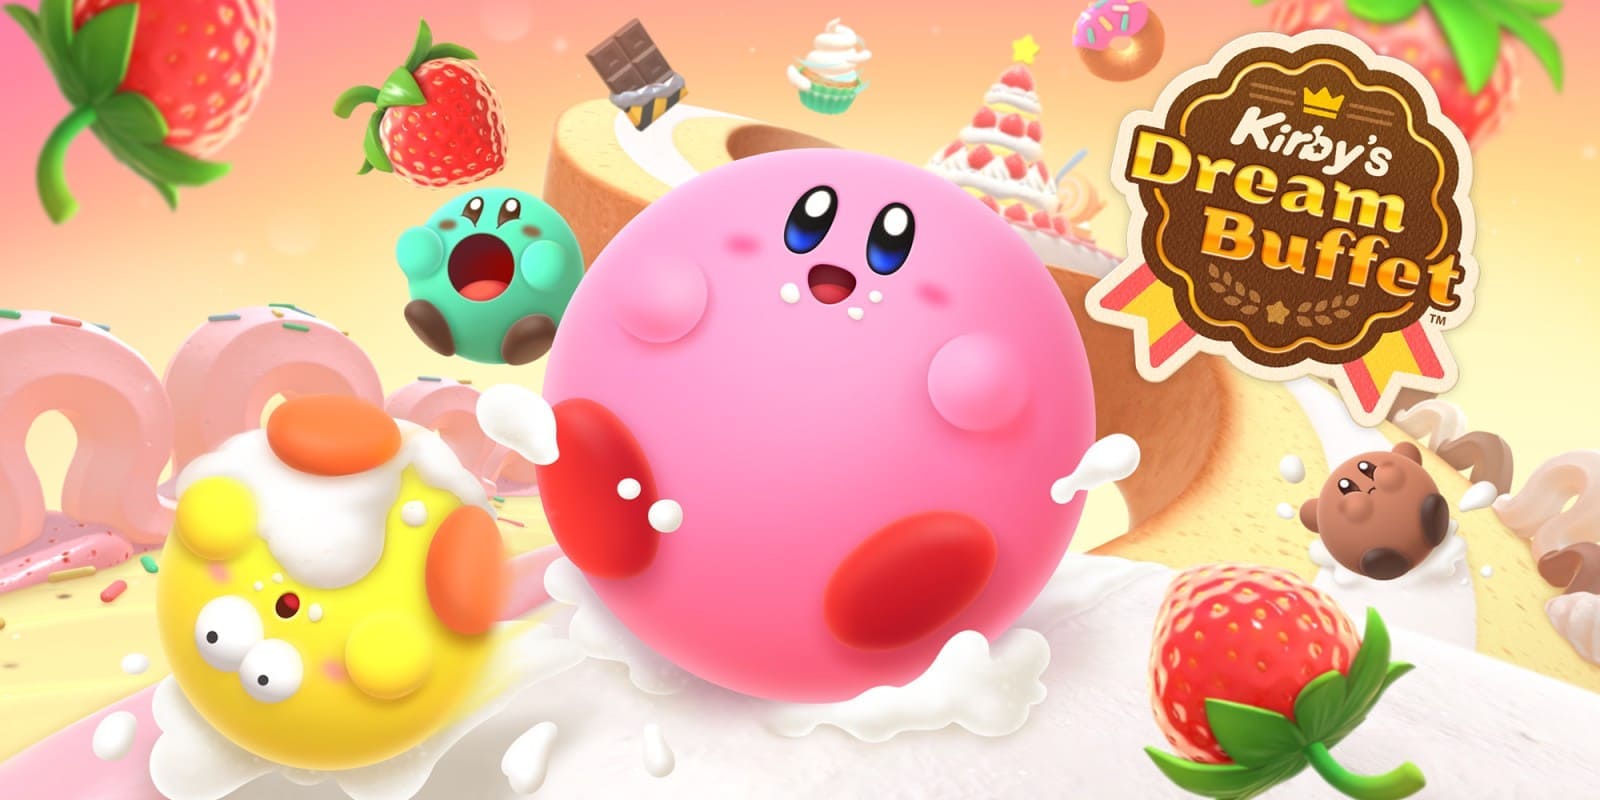 Image de présentation de l'article : Présentation du Nouveau Jeu Nintendo : Kirby’s Dream Buffet